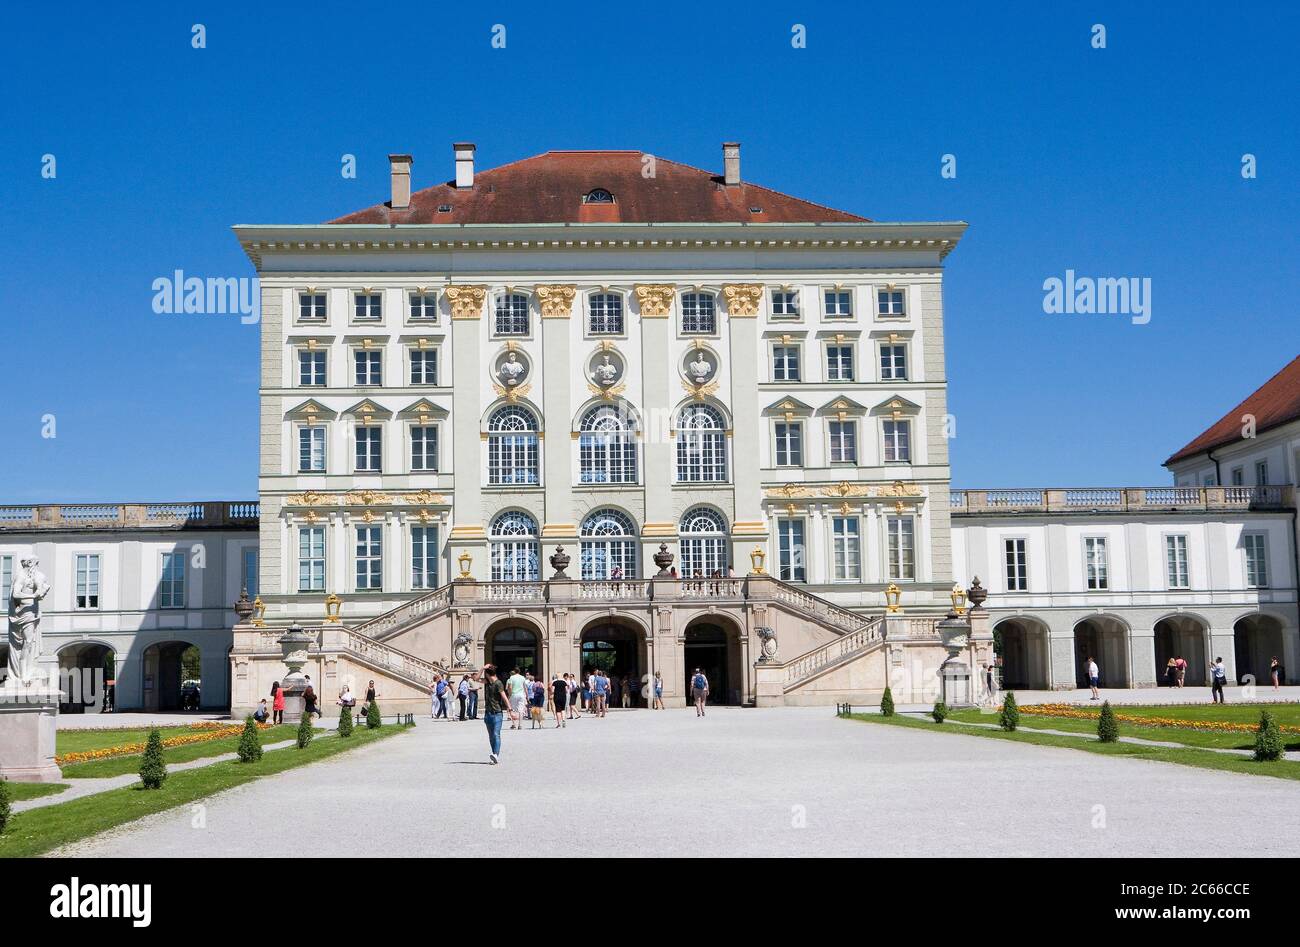 München, Schloss Nymphenburg, Baubeginn 1664 - 1675, nach dem Vorbild des piemontesischen Schlosses Venaria, Blick auf das Schloss aus dem französischen Garten, einem der großen königlichen Paläste Europas Stockfoto